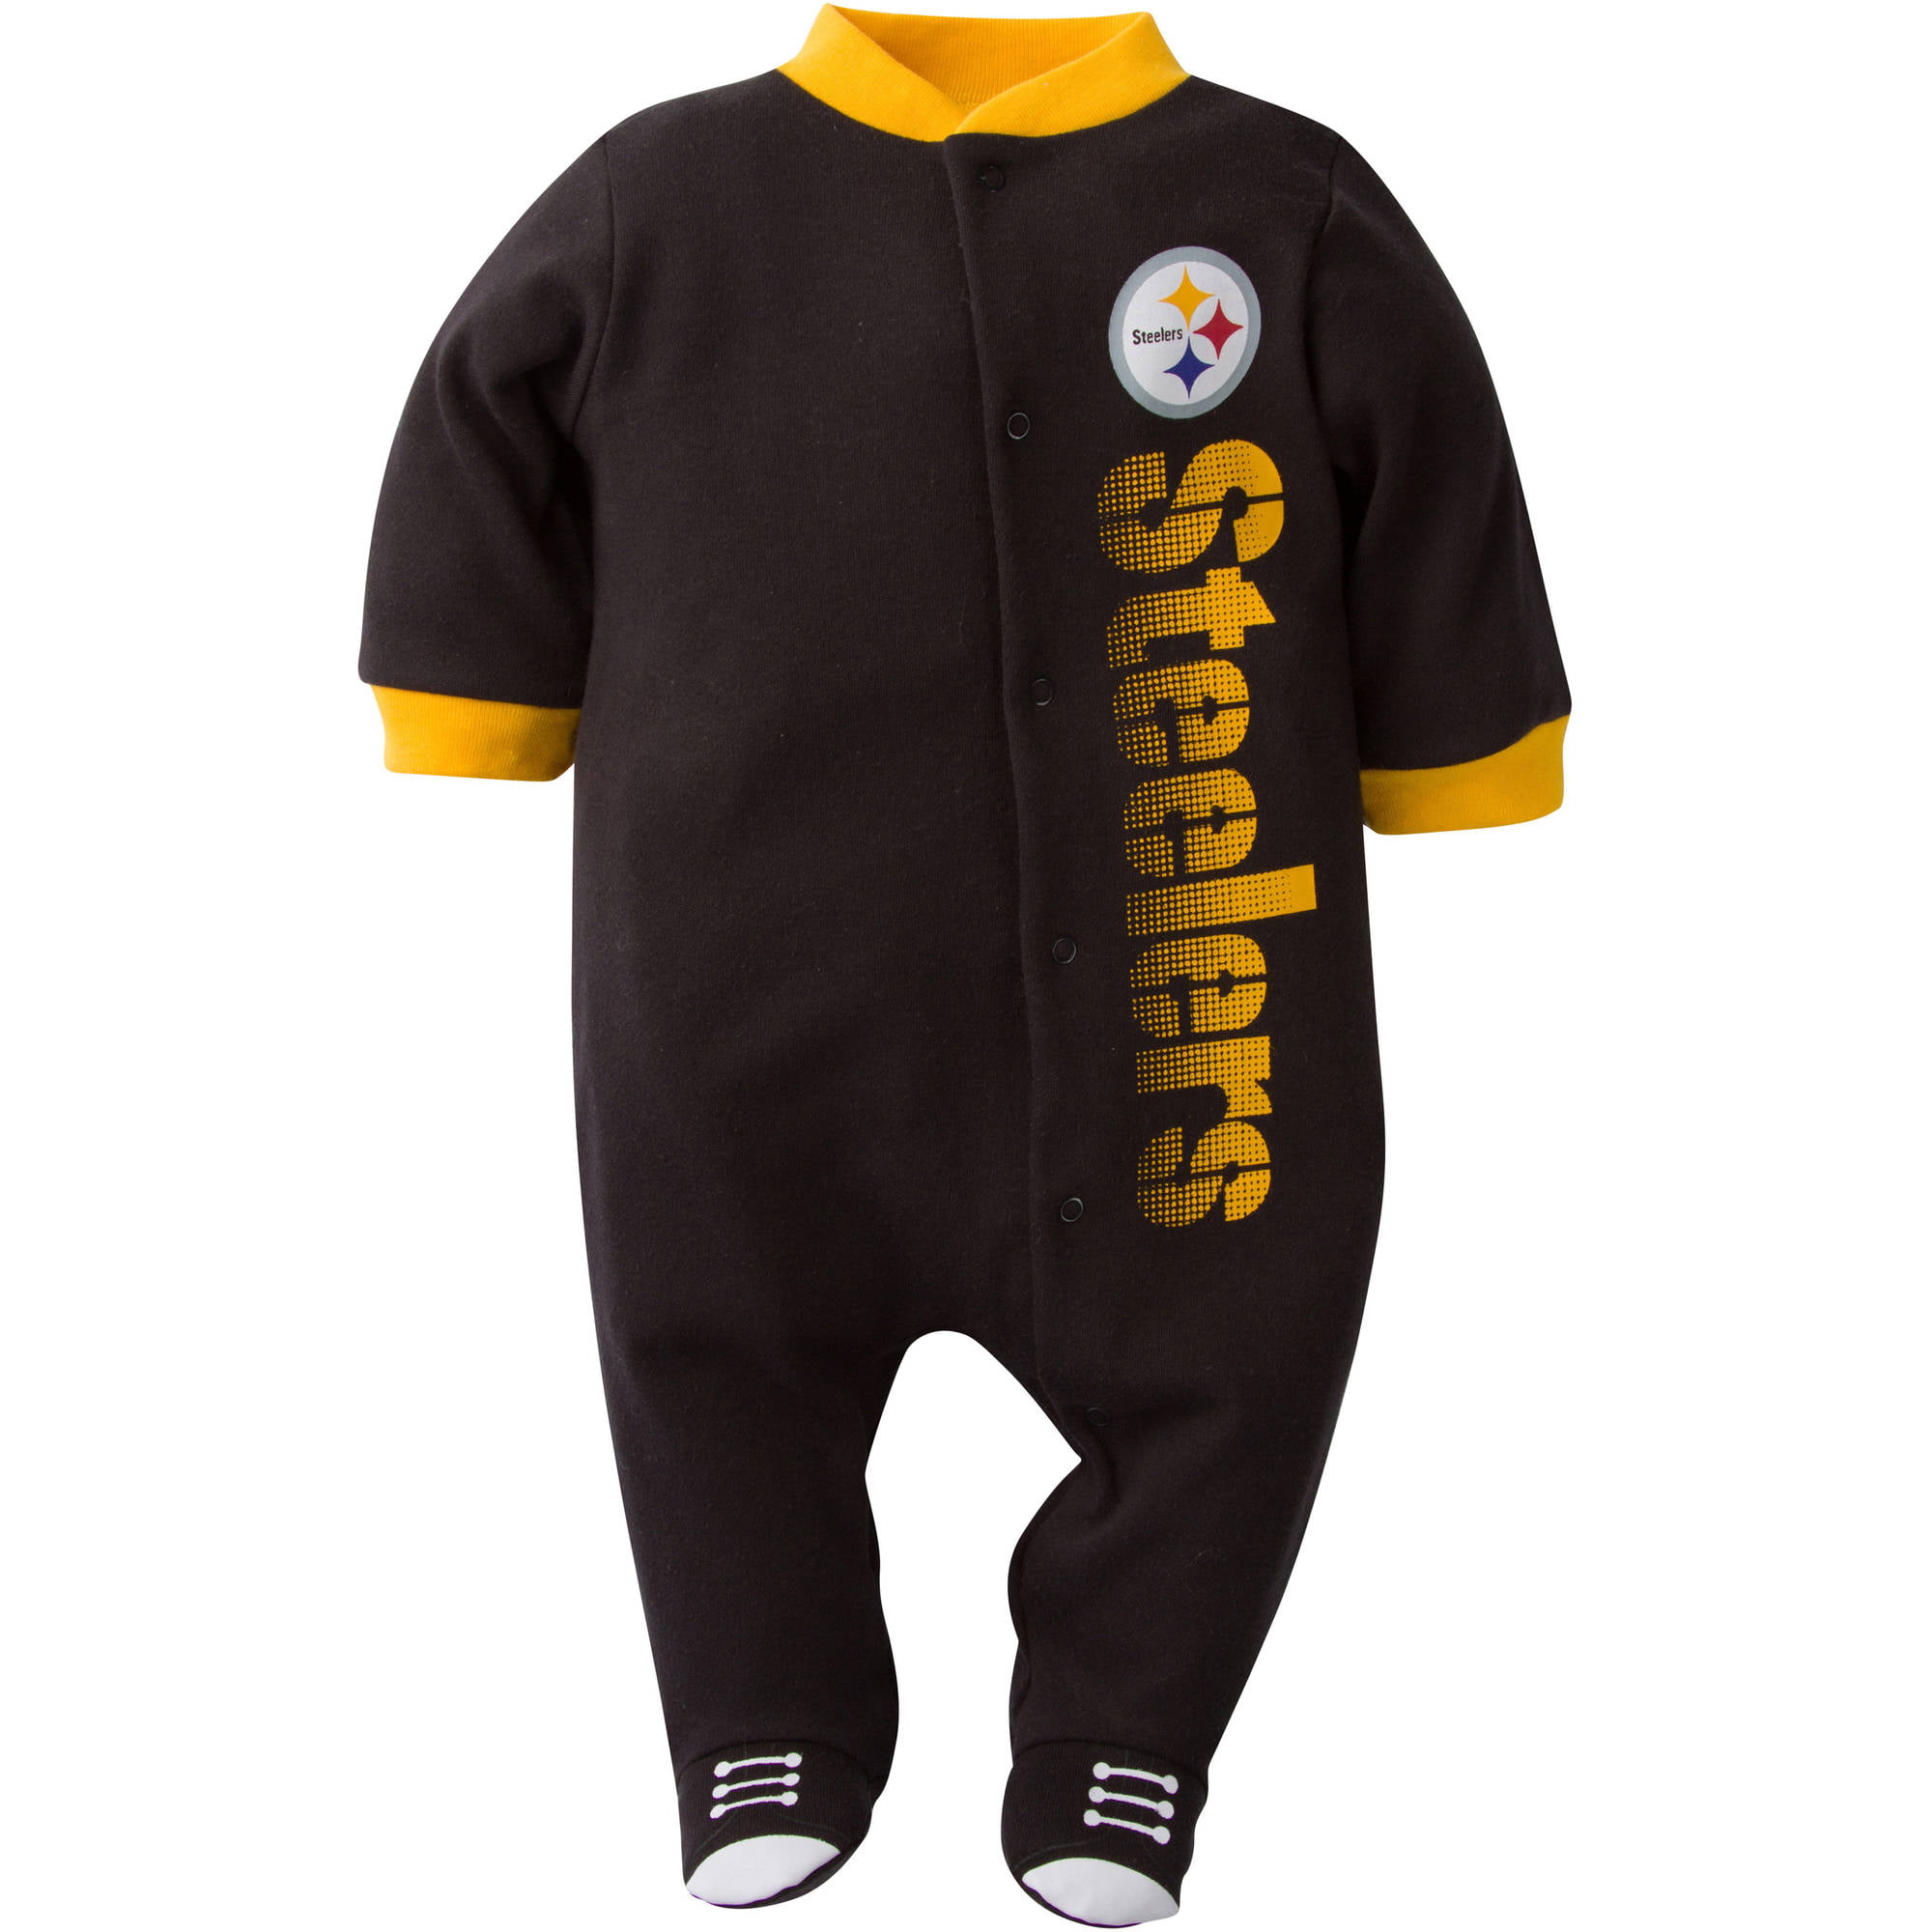 NFL Pittsburgh Steelers Baby Boys Team Sleep 'N Play Outfit 